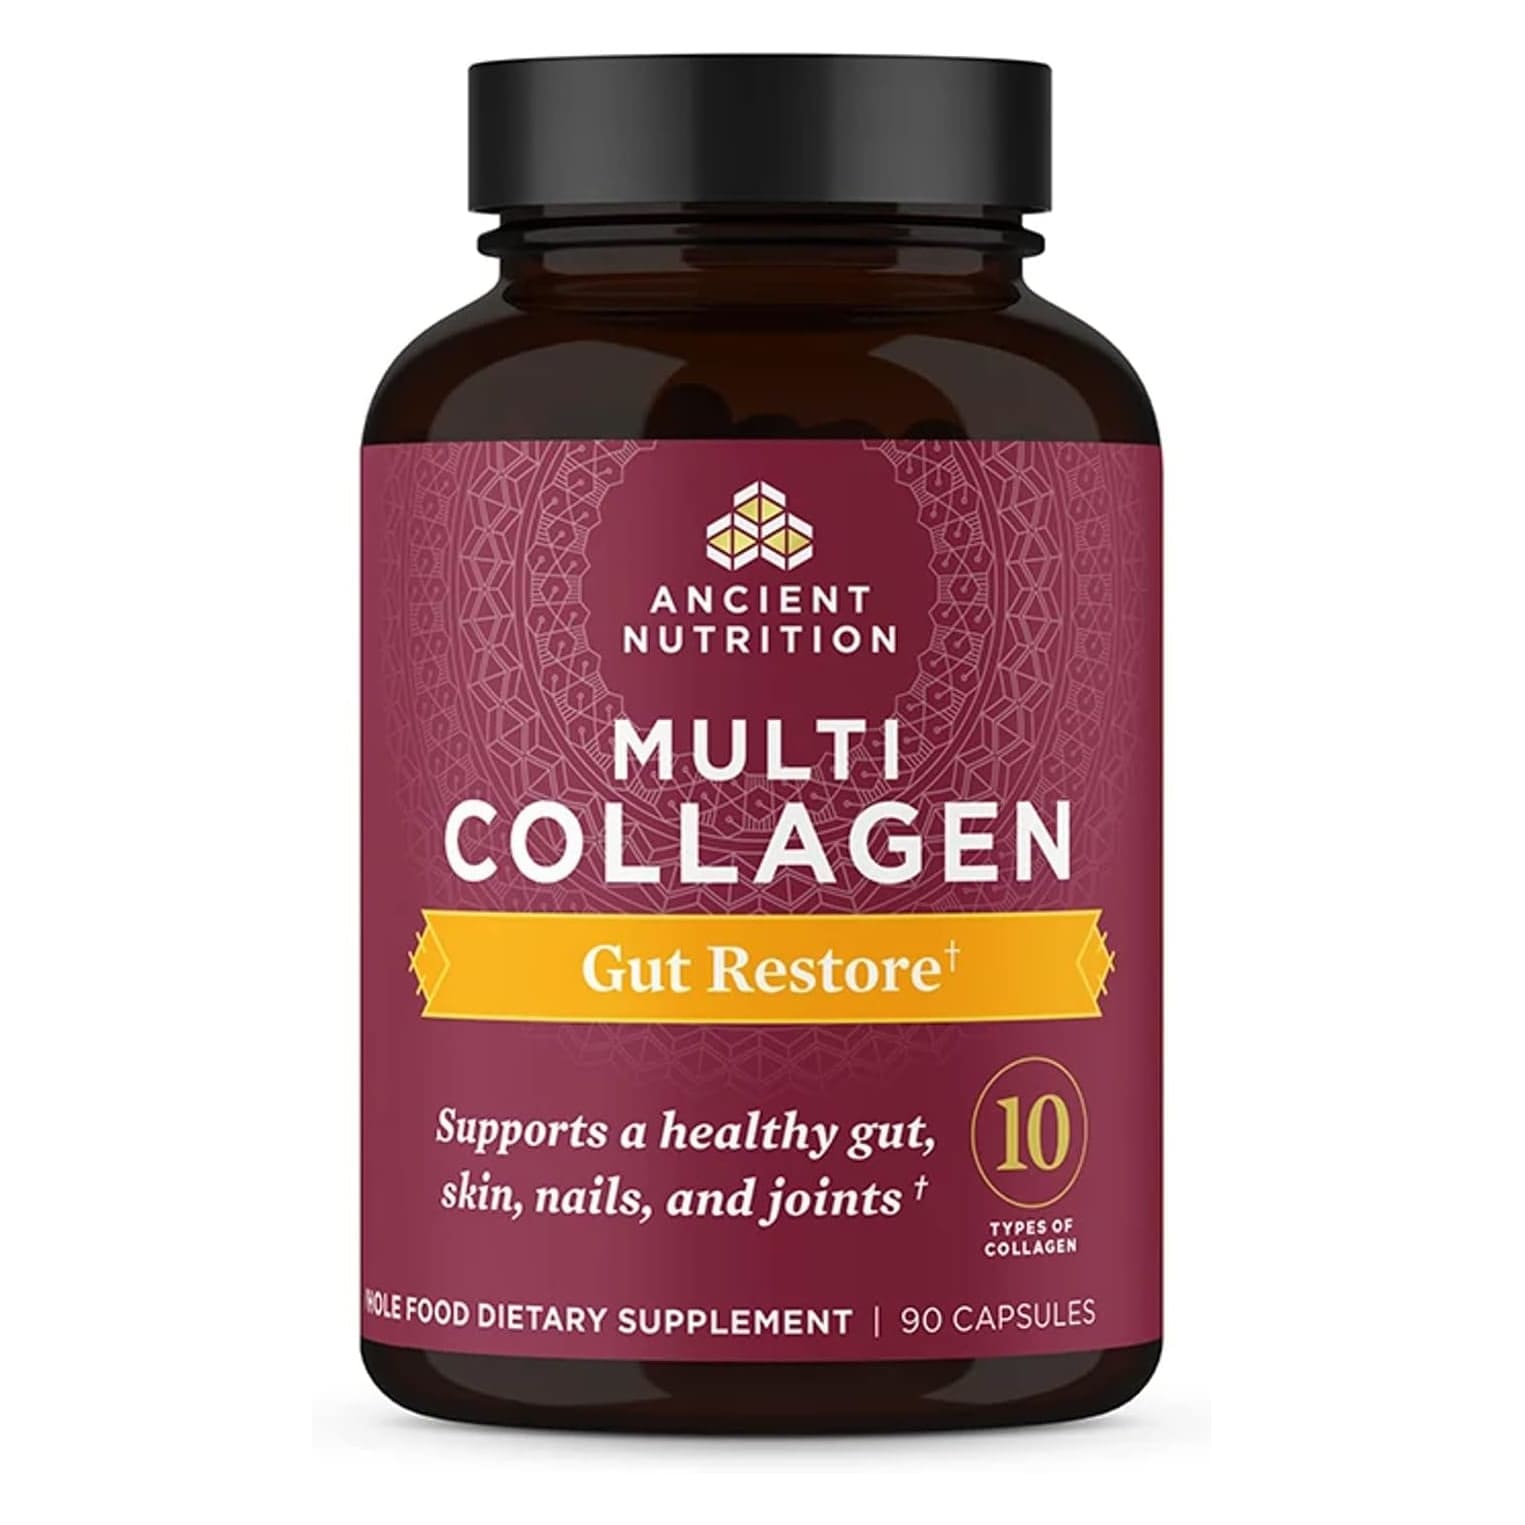 Коллаген Ancient Nutrition Multi Gut Restore 10 Types, 90 капсул биологически активная добавка beguana коллаген 180 гр